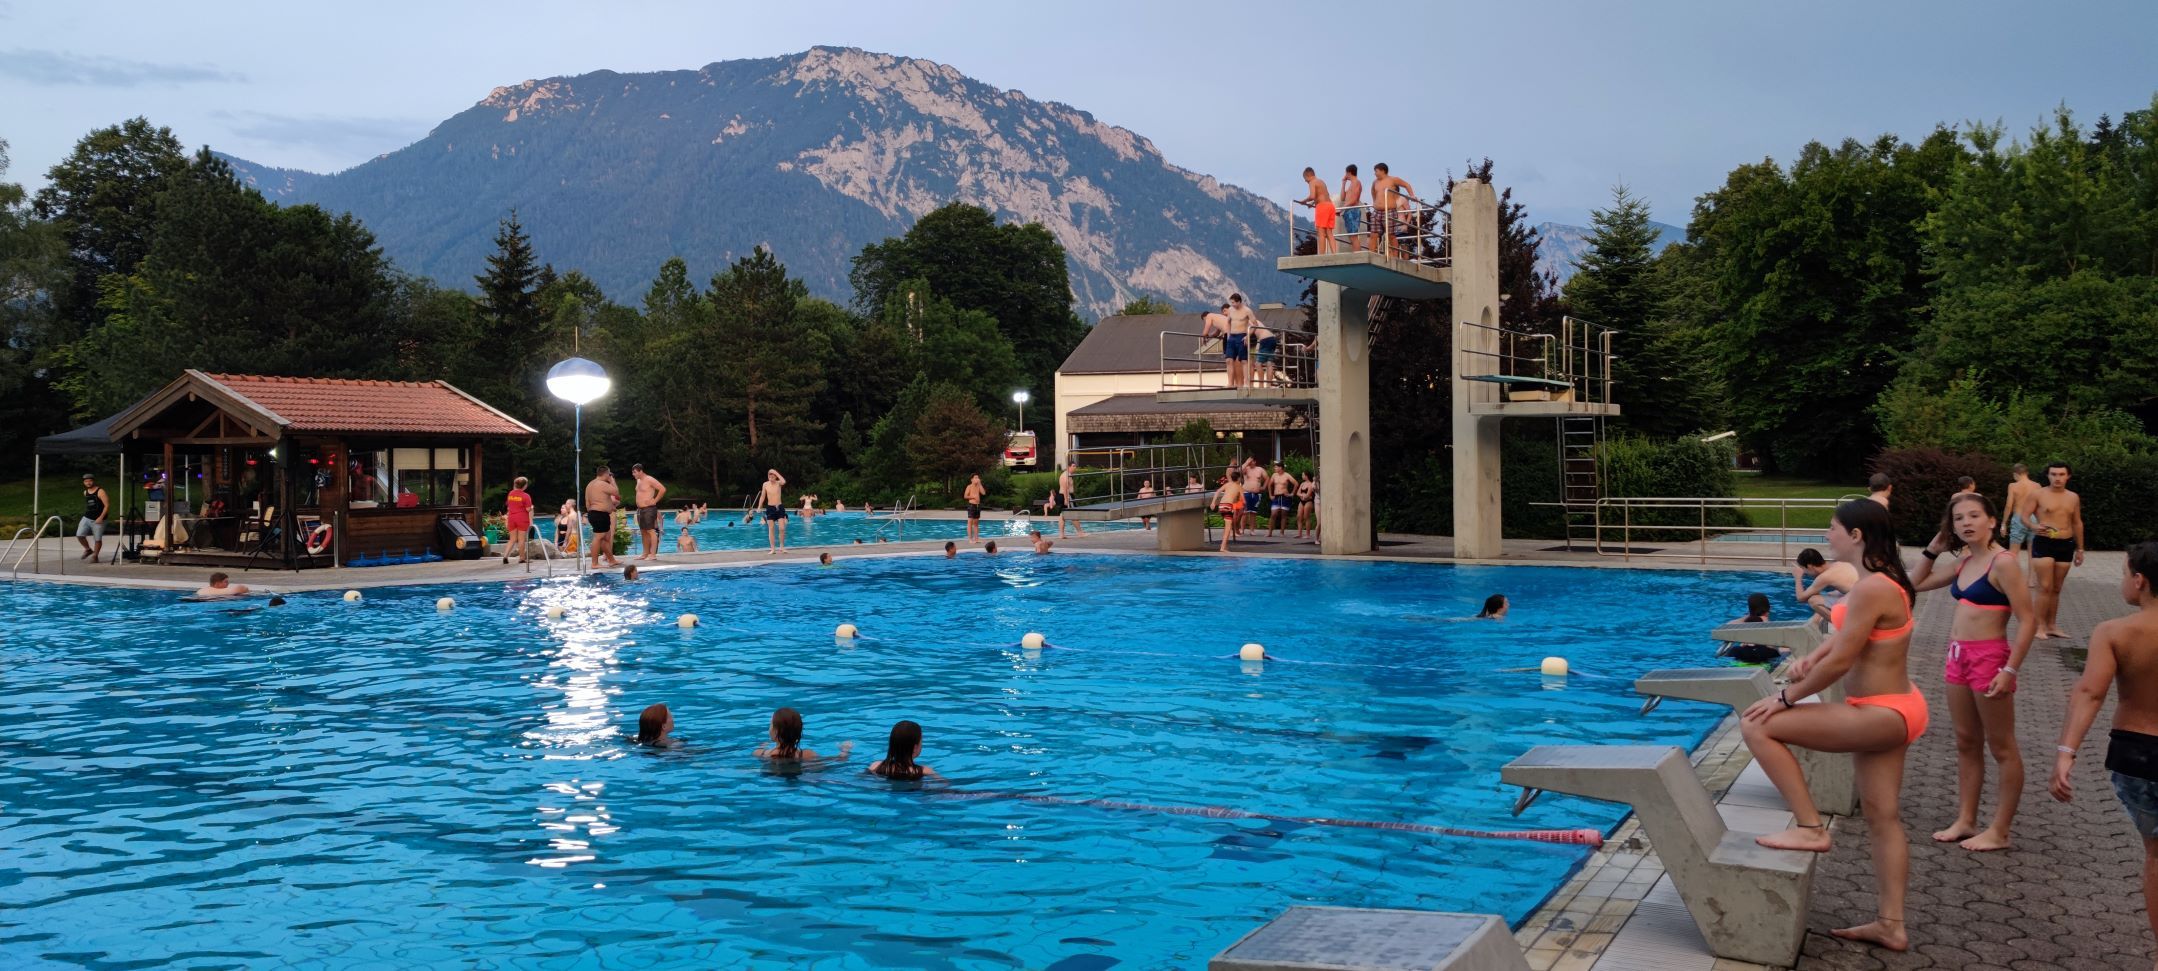 Blaulichtzeltlager Ruhpolding; Traumhafter Bergblick vom Schwimmbecken aus